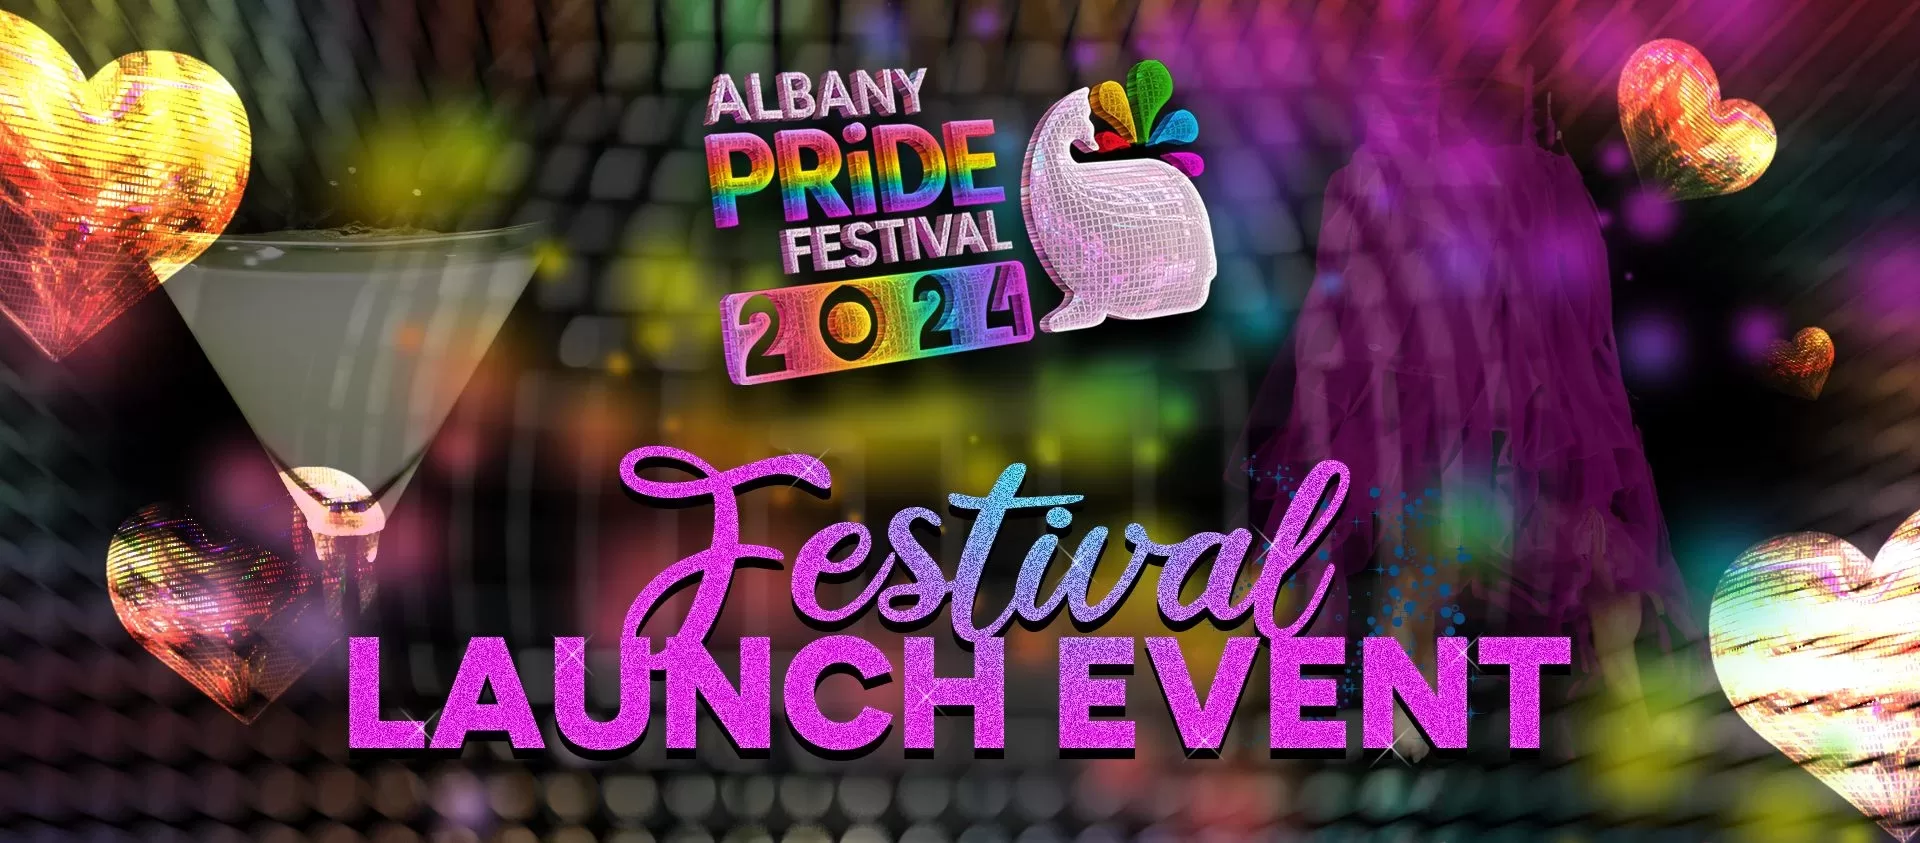 Festival Launch Event ’24 Albany Pride Festival